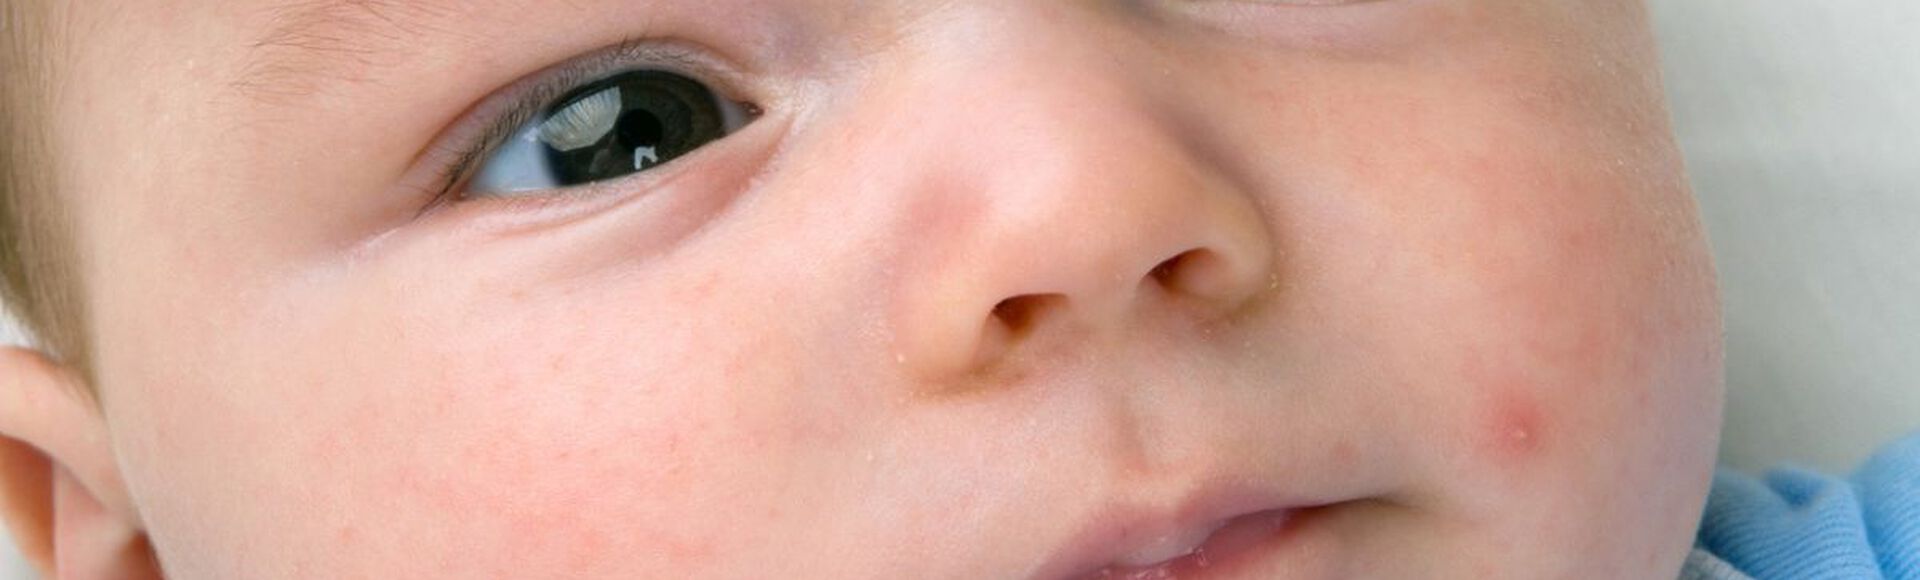 bebê com espinhas no rosto